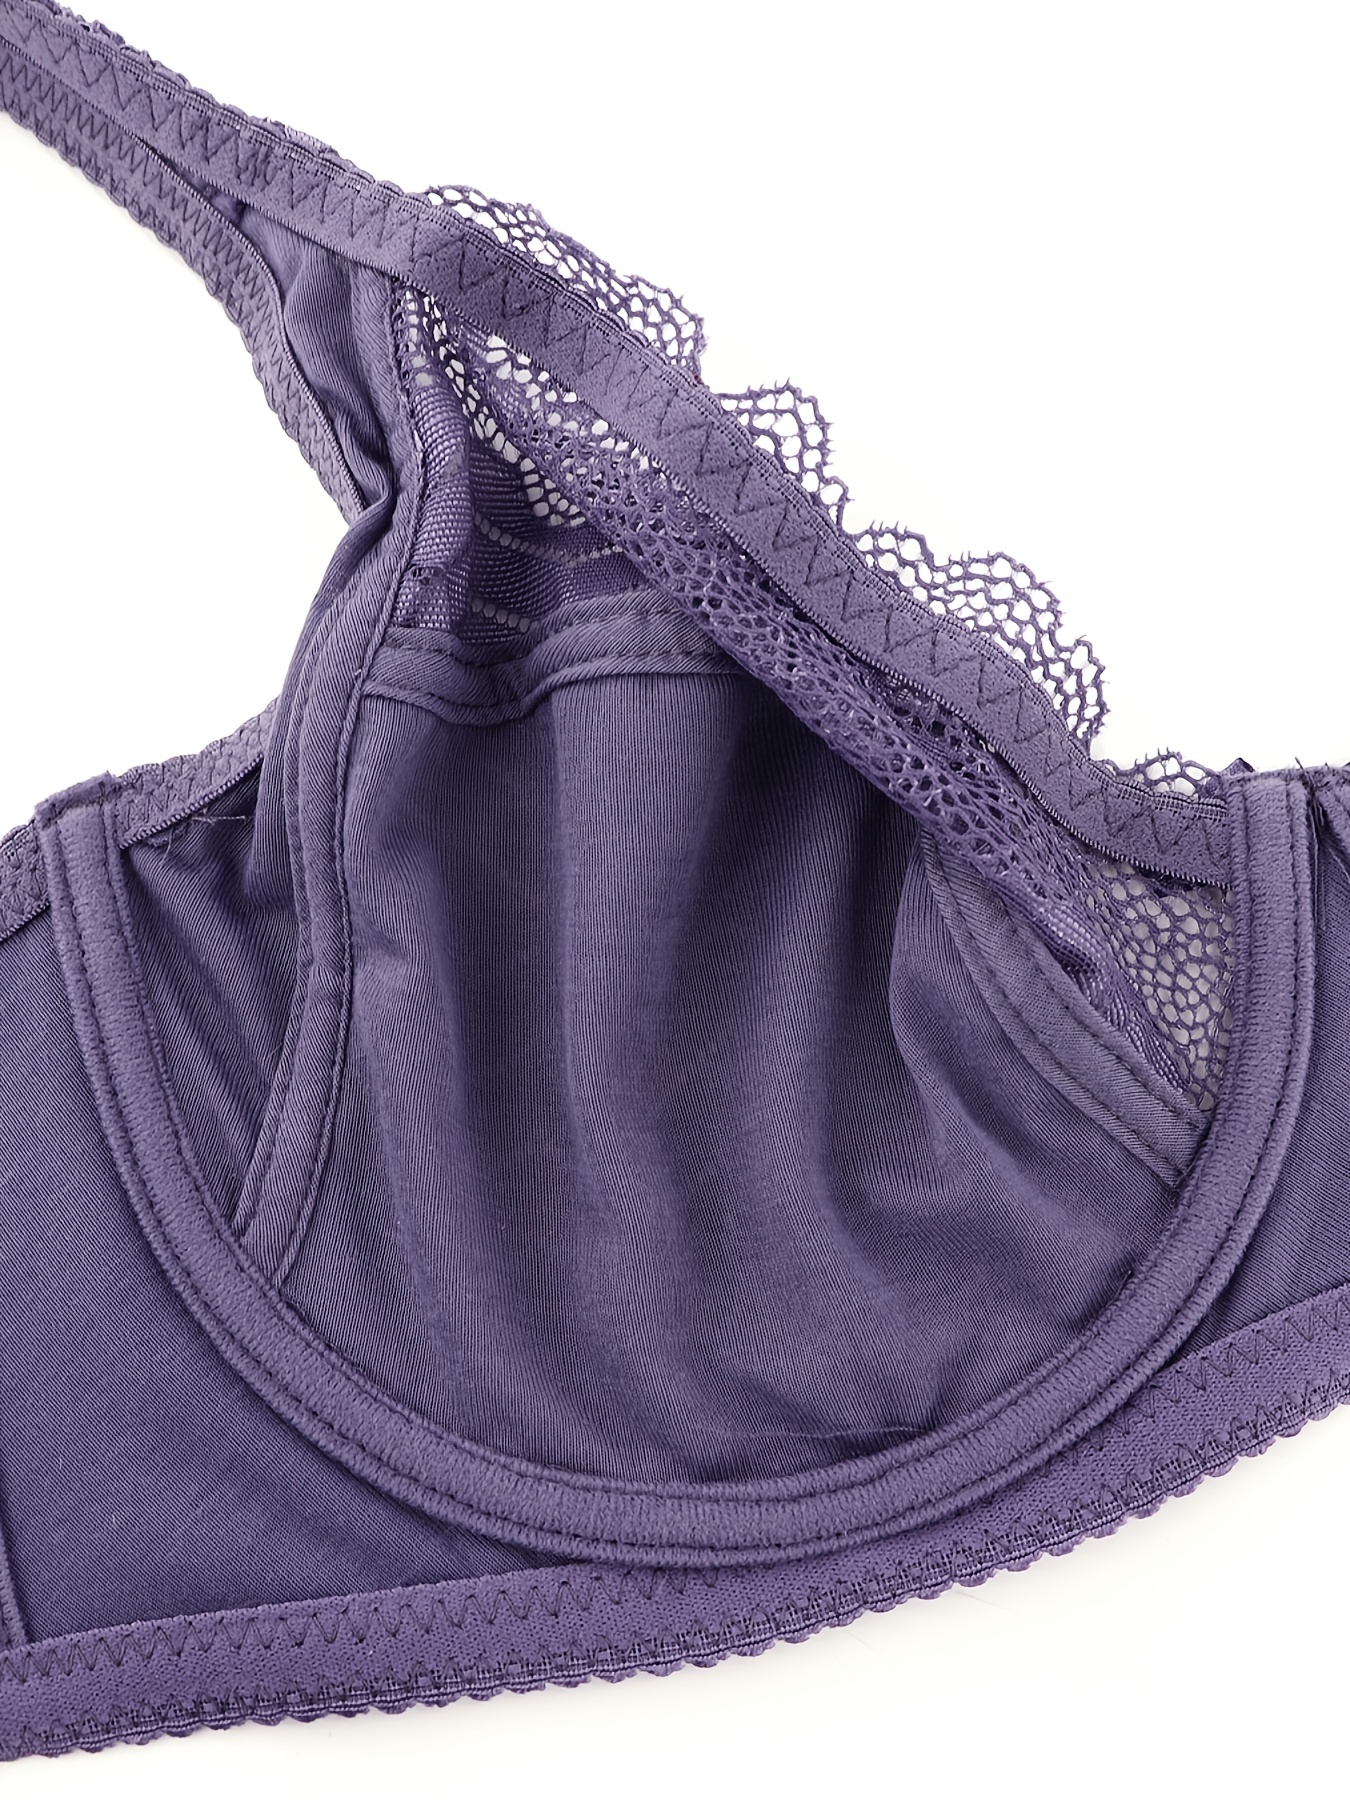 Plum Stretch Knit Plus Size Corset, Womens Sexy Plus Size Lingerie